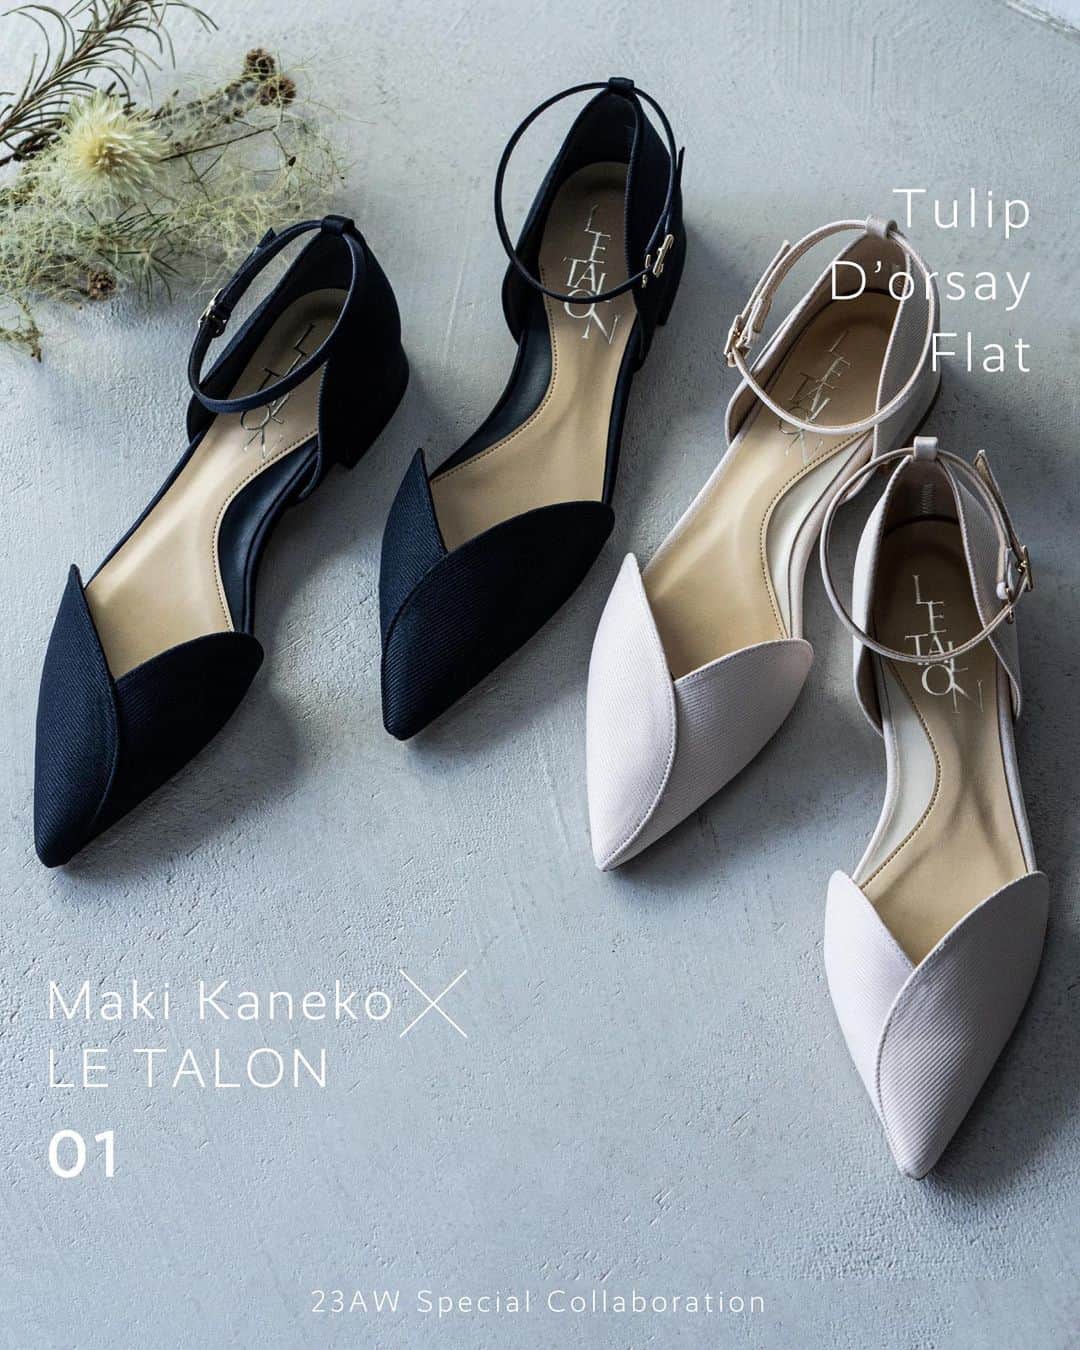 ルタロンのインスタグラム：「ㅤㅤㅤㅤㅤㅤㅤㅤㅤㅤㅤㅤㅤㅤㅤㅤㅤㅤㅤㅤㅤㅤㅤㅤㅤㅤ  Maki Kaneko × LE TALON Special Collaboration!! ㅤㅤㅤㅤㅤㅤㅤㅤㅤㅤㅤㅤㅤ 人気インフルエンサー・金子麻貴さんとの コラボシューズ第3弾がいよいよ販売スタート♡  この秋は、履き方で雰囲気を変えられてコーディネートの幅も広がる３型が登場します。  ファッションブランドのディレクターとして、 そしてママとしてのライフスタイルも支持を集める 金子さんならではのこだわりが詰まったアイテム✨  Web特集は@letalon_jpのプロフィールよりぜひご覧ください😊  ────────────────  🔖 TULIPドルセーフラット / Maki Kaneko × LE TALON ¥12,650（tax included） size：22.0-25.0cm col：navy, beige  no.23182820153830  気軽に履けて品よく見えるフラットシューズ。 お花のような曲線のカッティングが エレガントな肌見せを叶えます✨ ストラップは取り外しできる2wayなので、 コーデによってバランスをチェンジ！  🔖 Pillage BAG / LE TALON ¥9,900 (tax included) col：blue, white, black no.23092820006530  ────────────────  【発売店舗】 LE TALON 全店(GRISE ルミネ新宿店を除く) BAYCREW’S STORE 仙台店 BAYCREW’S STORE 名古屋店 BAYCREW’S STORE 福岡店 オンラインストア  @mtmmaki @letalon_jp  Shirts @u_by_spickandspan  Vest @iena_jp  Pants 金子さん私物  #金子麻貴さん #LETALON #ルタロン  #コラボレーション #シューズ #靴  #フラットシューズ #ストラップシューズ  ────────────────  📣9月はおトクなイベントが続々！  ＼好評開催中♡／ 9.16(土)-24(日) 京王パスポートカード10倍キャンペーン!! ➡︎LE TALON 吉祥寺店  9.16(土)-25(月) エポスカード10%OFF‼ ➡︎LE TALON 有楽町店  9.20(水)-9.24(日) LUCUAメンバーズカード 5倍ポイントアップキャンペーン!! ➡︎LE TALON 大阪店  9.22(金)-24(日) ポイントアップキャンペーン!! ➡︎LE TALON 二子玉川店  9.22(金)-24(日) ミオクラブ5倍ポイントアップ!! ➡︎LE TALON PLUS 天王寺MIO店  9.22(金)-26(火) 丸の内ポイント ポイントアップキャンペーン!! ➡︎LE TALON 丸の内店  ＼ただいまお取り置きを承り中／ 事前にご試着まで済ませておけば 当日のお会計もスムーズに！ 狙っているアイテムも確実にゲットできちゃいます♡ ぜひご利用ください😌  9.27(水)-10.3(火) TGMポイント3倍キャンペーン!! ➡︎LE TALON 名古屋タカシマヤゲートタワーモール店」